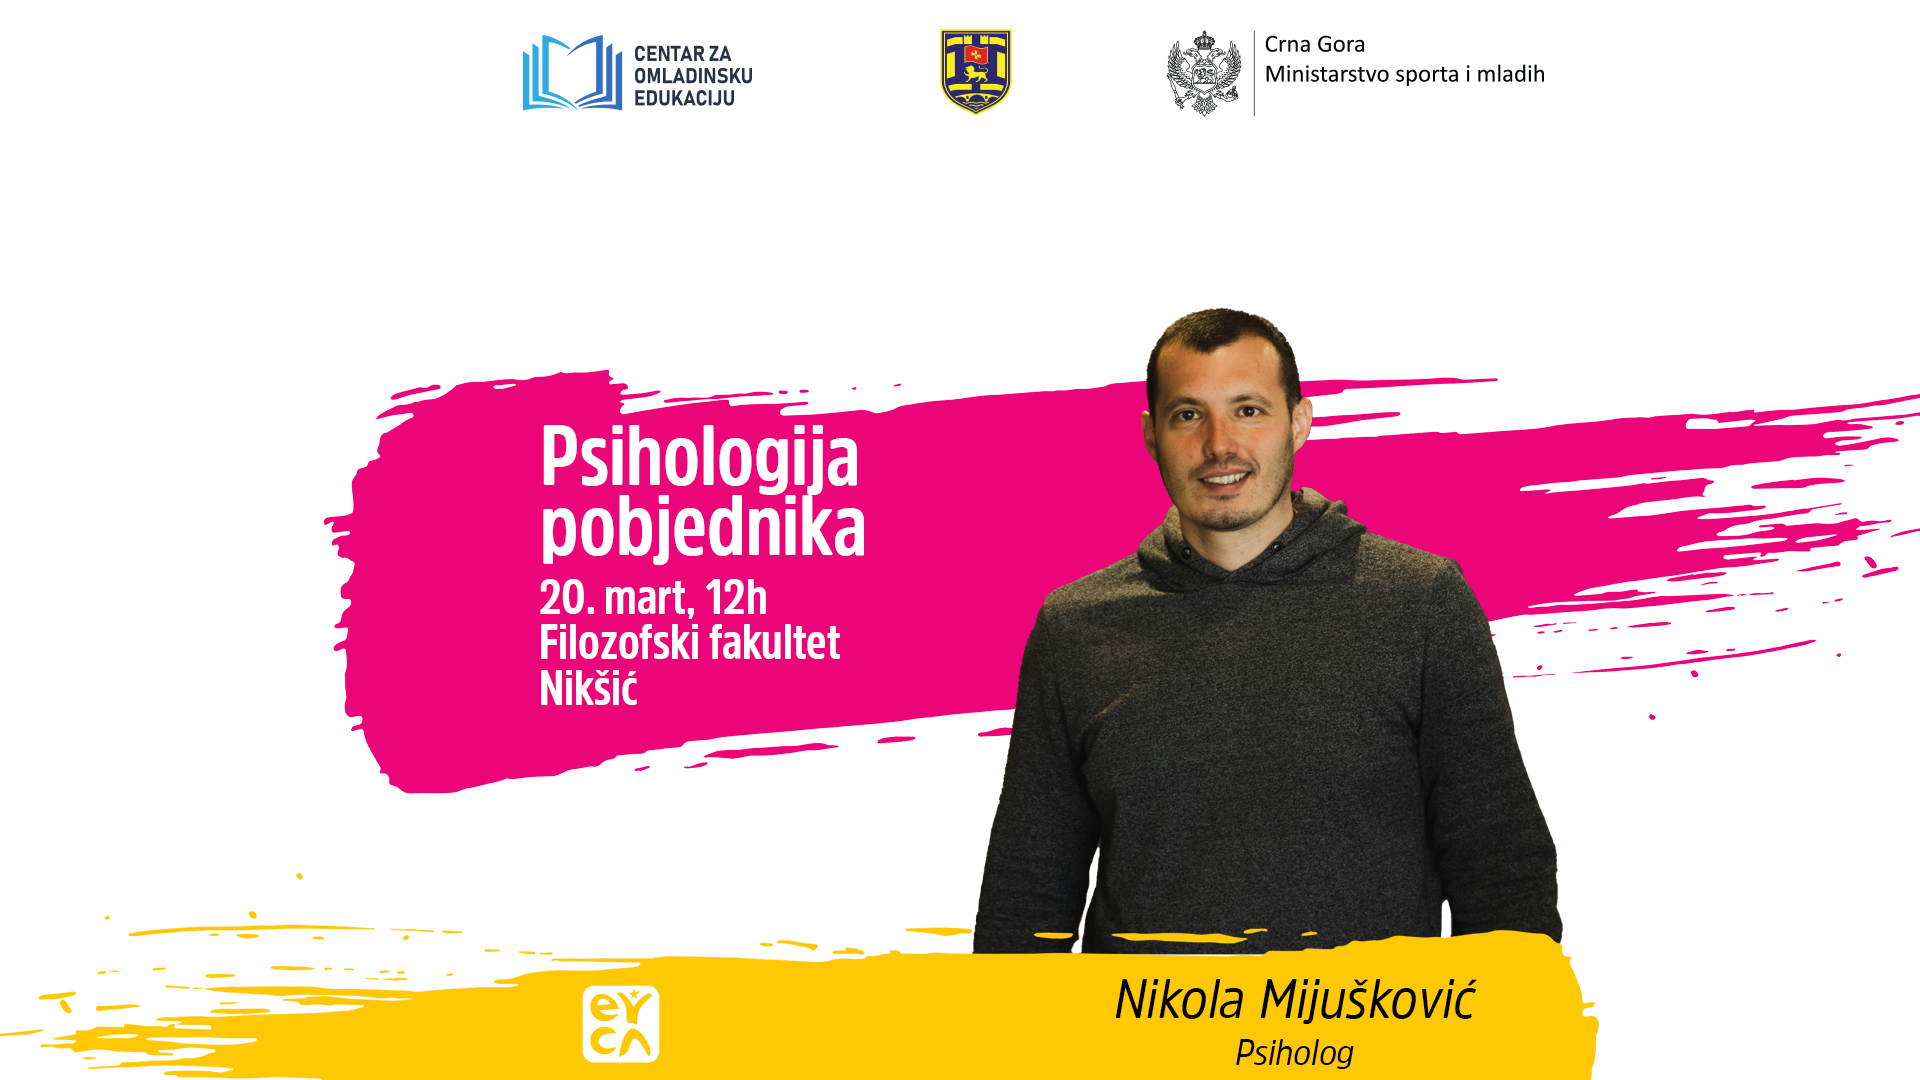 Nikola Mijuskovic Radionica_Veb sajt.png